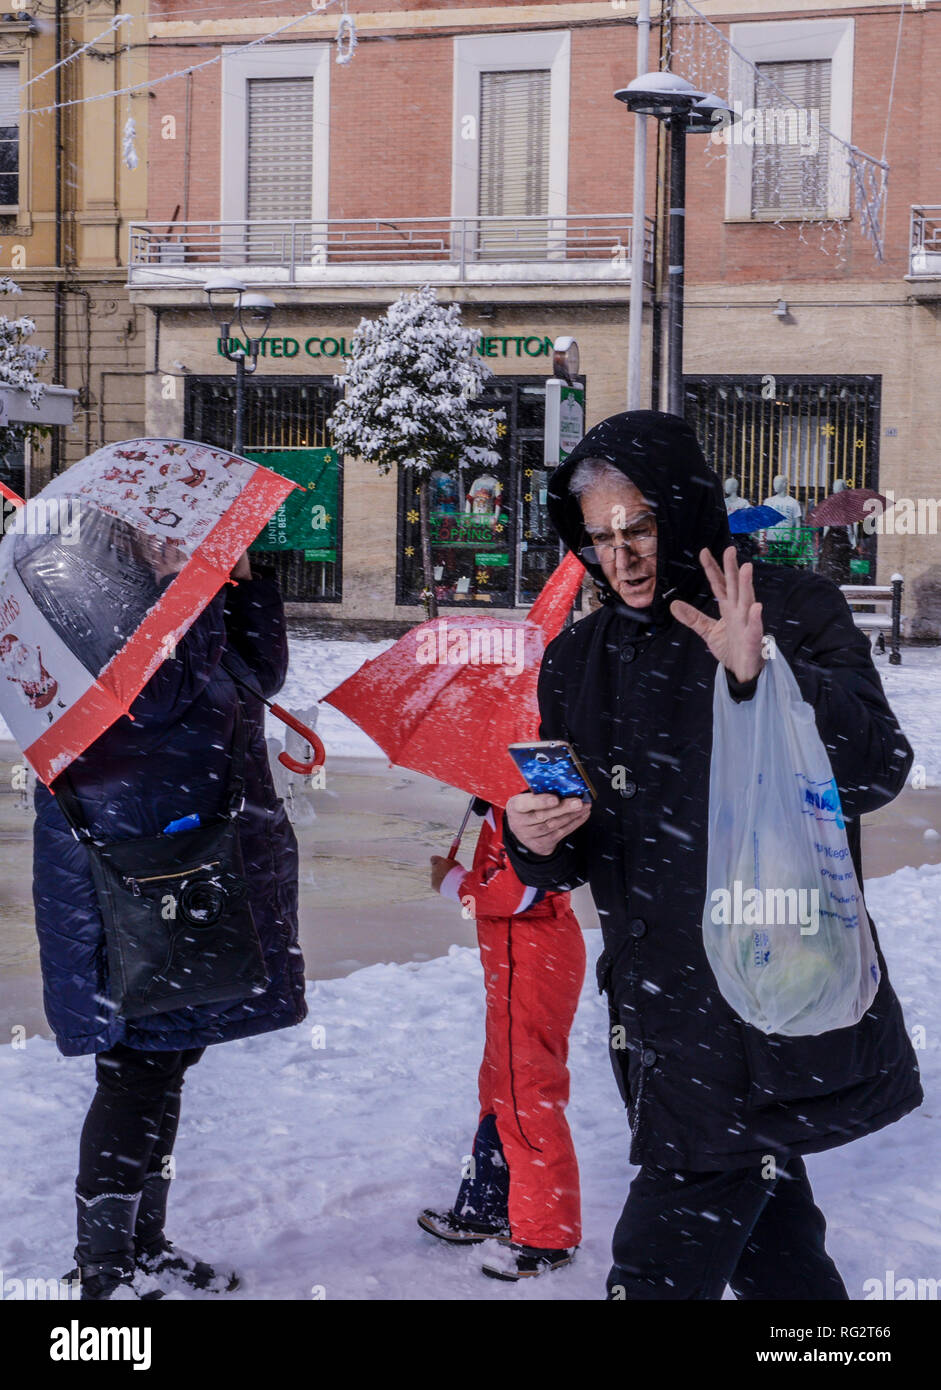 Man Walking in der Straße während des Schneesturms am Smartphone suchen, Menschen, die hinter ihm stehen, Schirme, Avezzano, Abruzzen, Italien, Europa Stockfoto